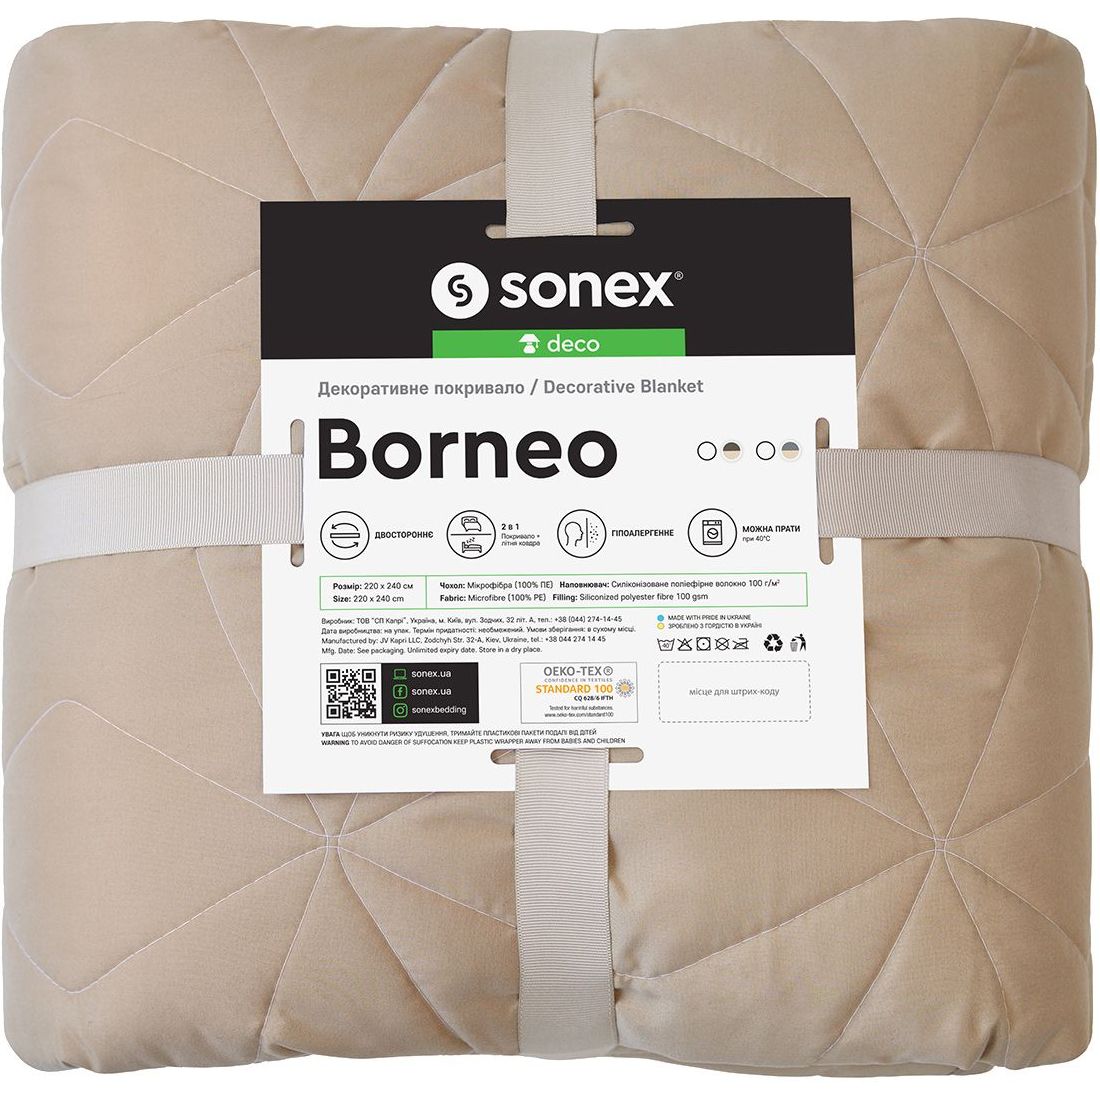 Декоративне покривало Sonex Borneo 220х240 см коричневе з бежевим (SO102400) - фото 10